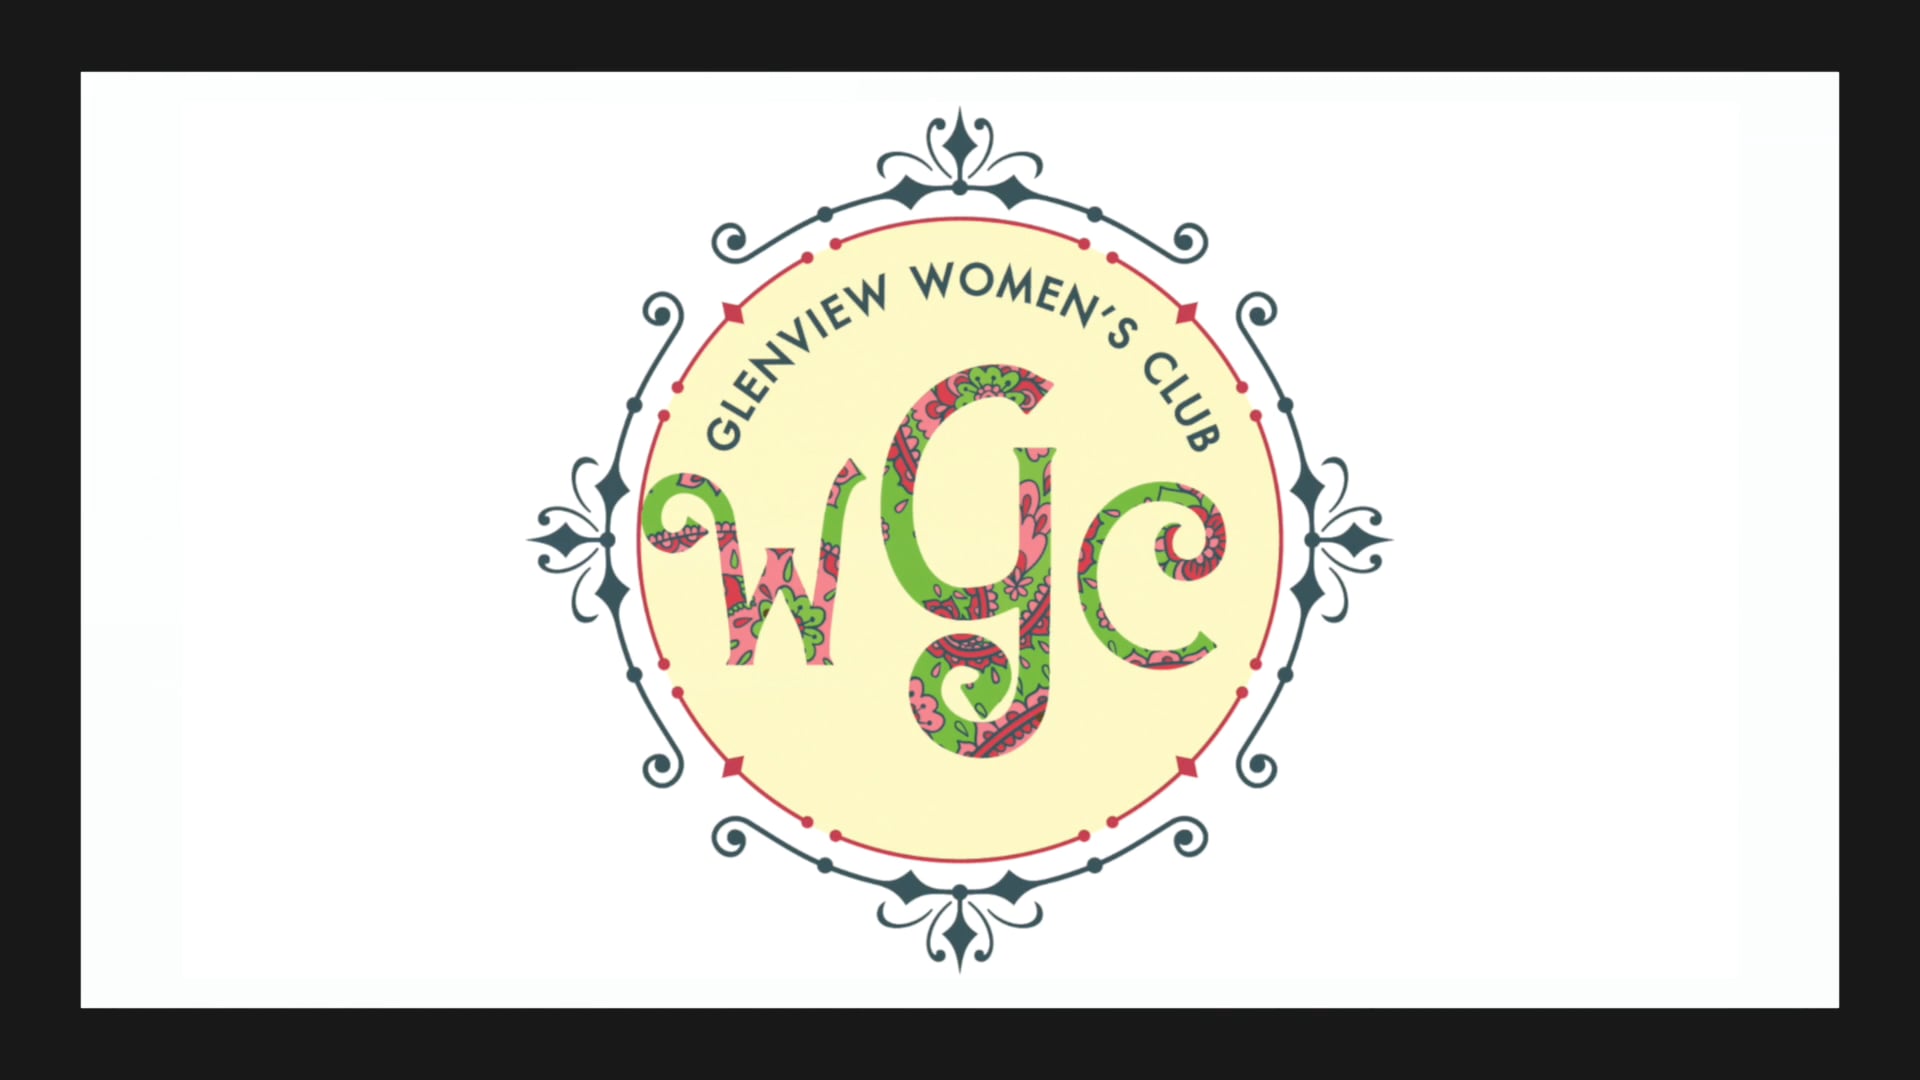 Glenview Women's Club